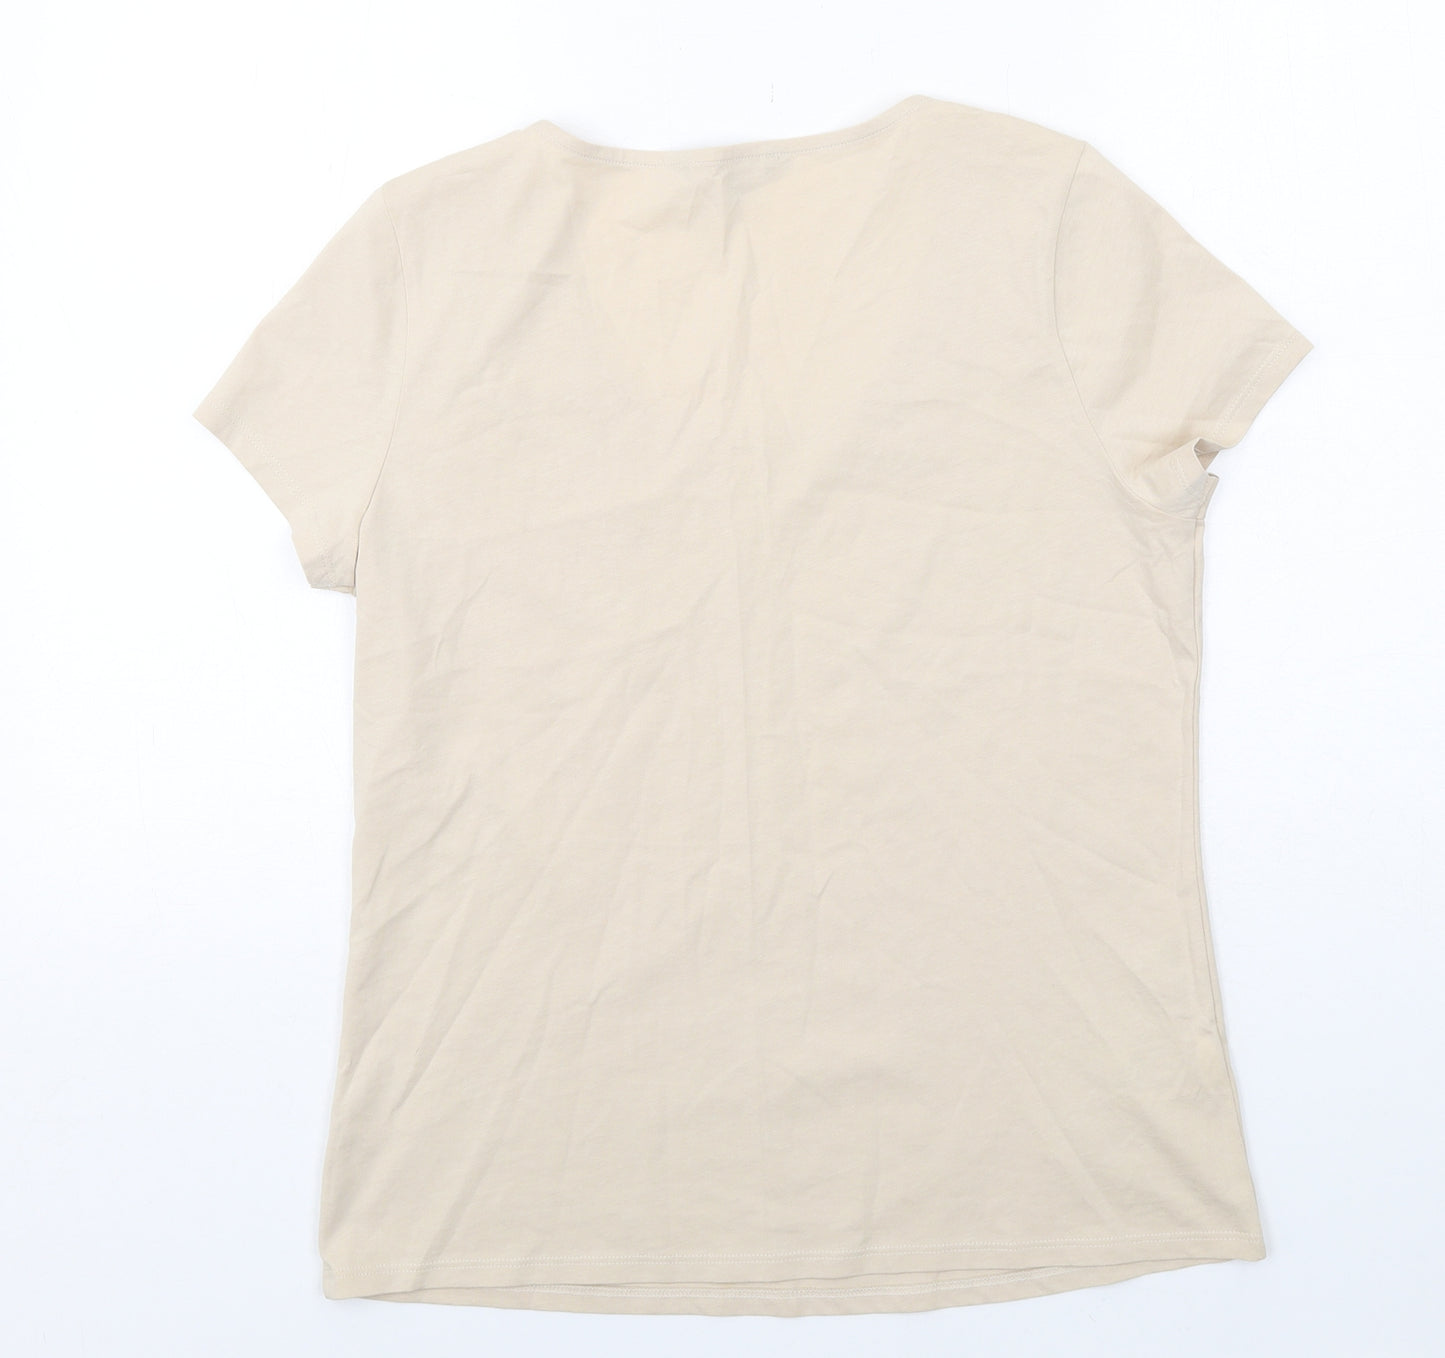 Laura Ashley Womens Beige Cotton Basic T-Shirt Size 12 Scoop Neck - Lace Details